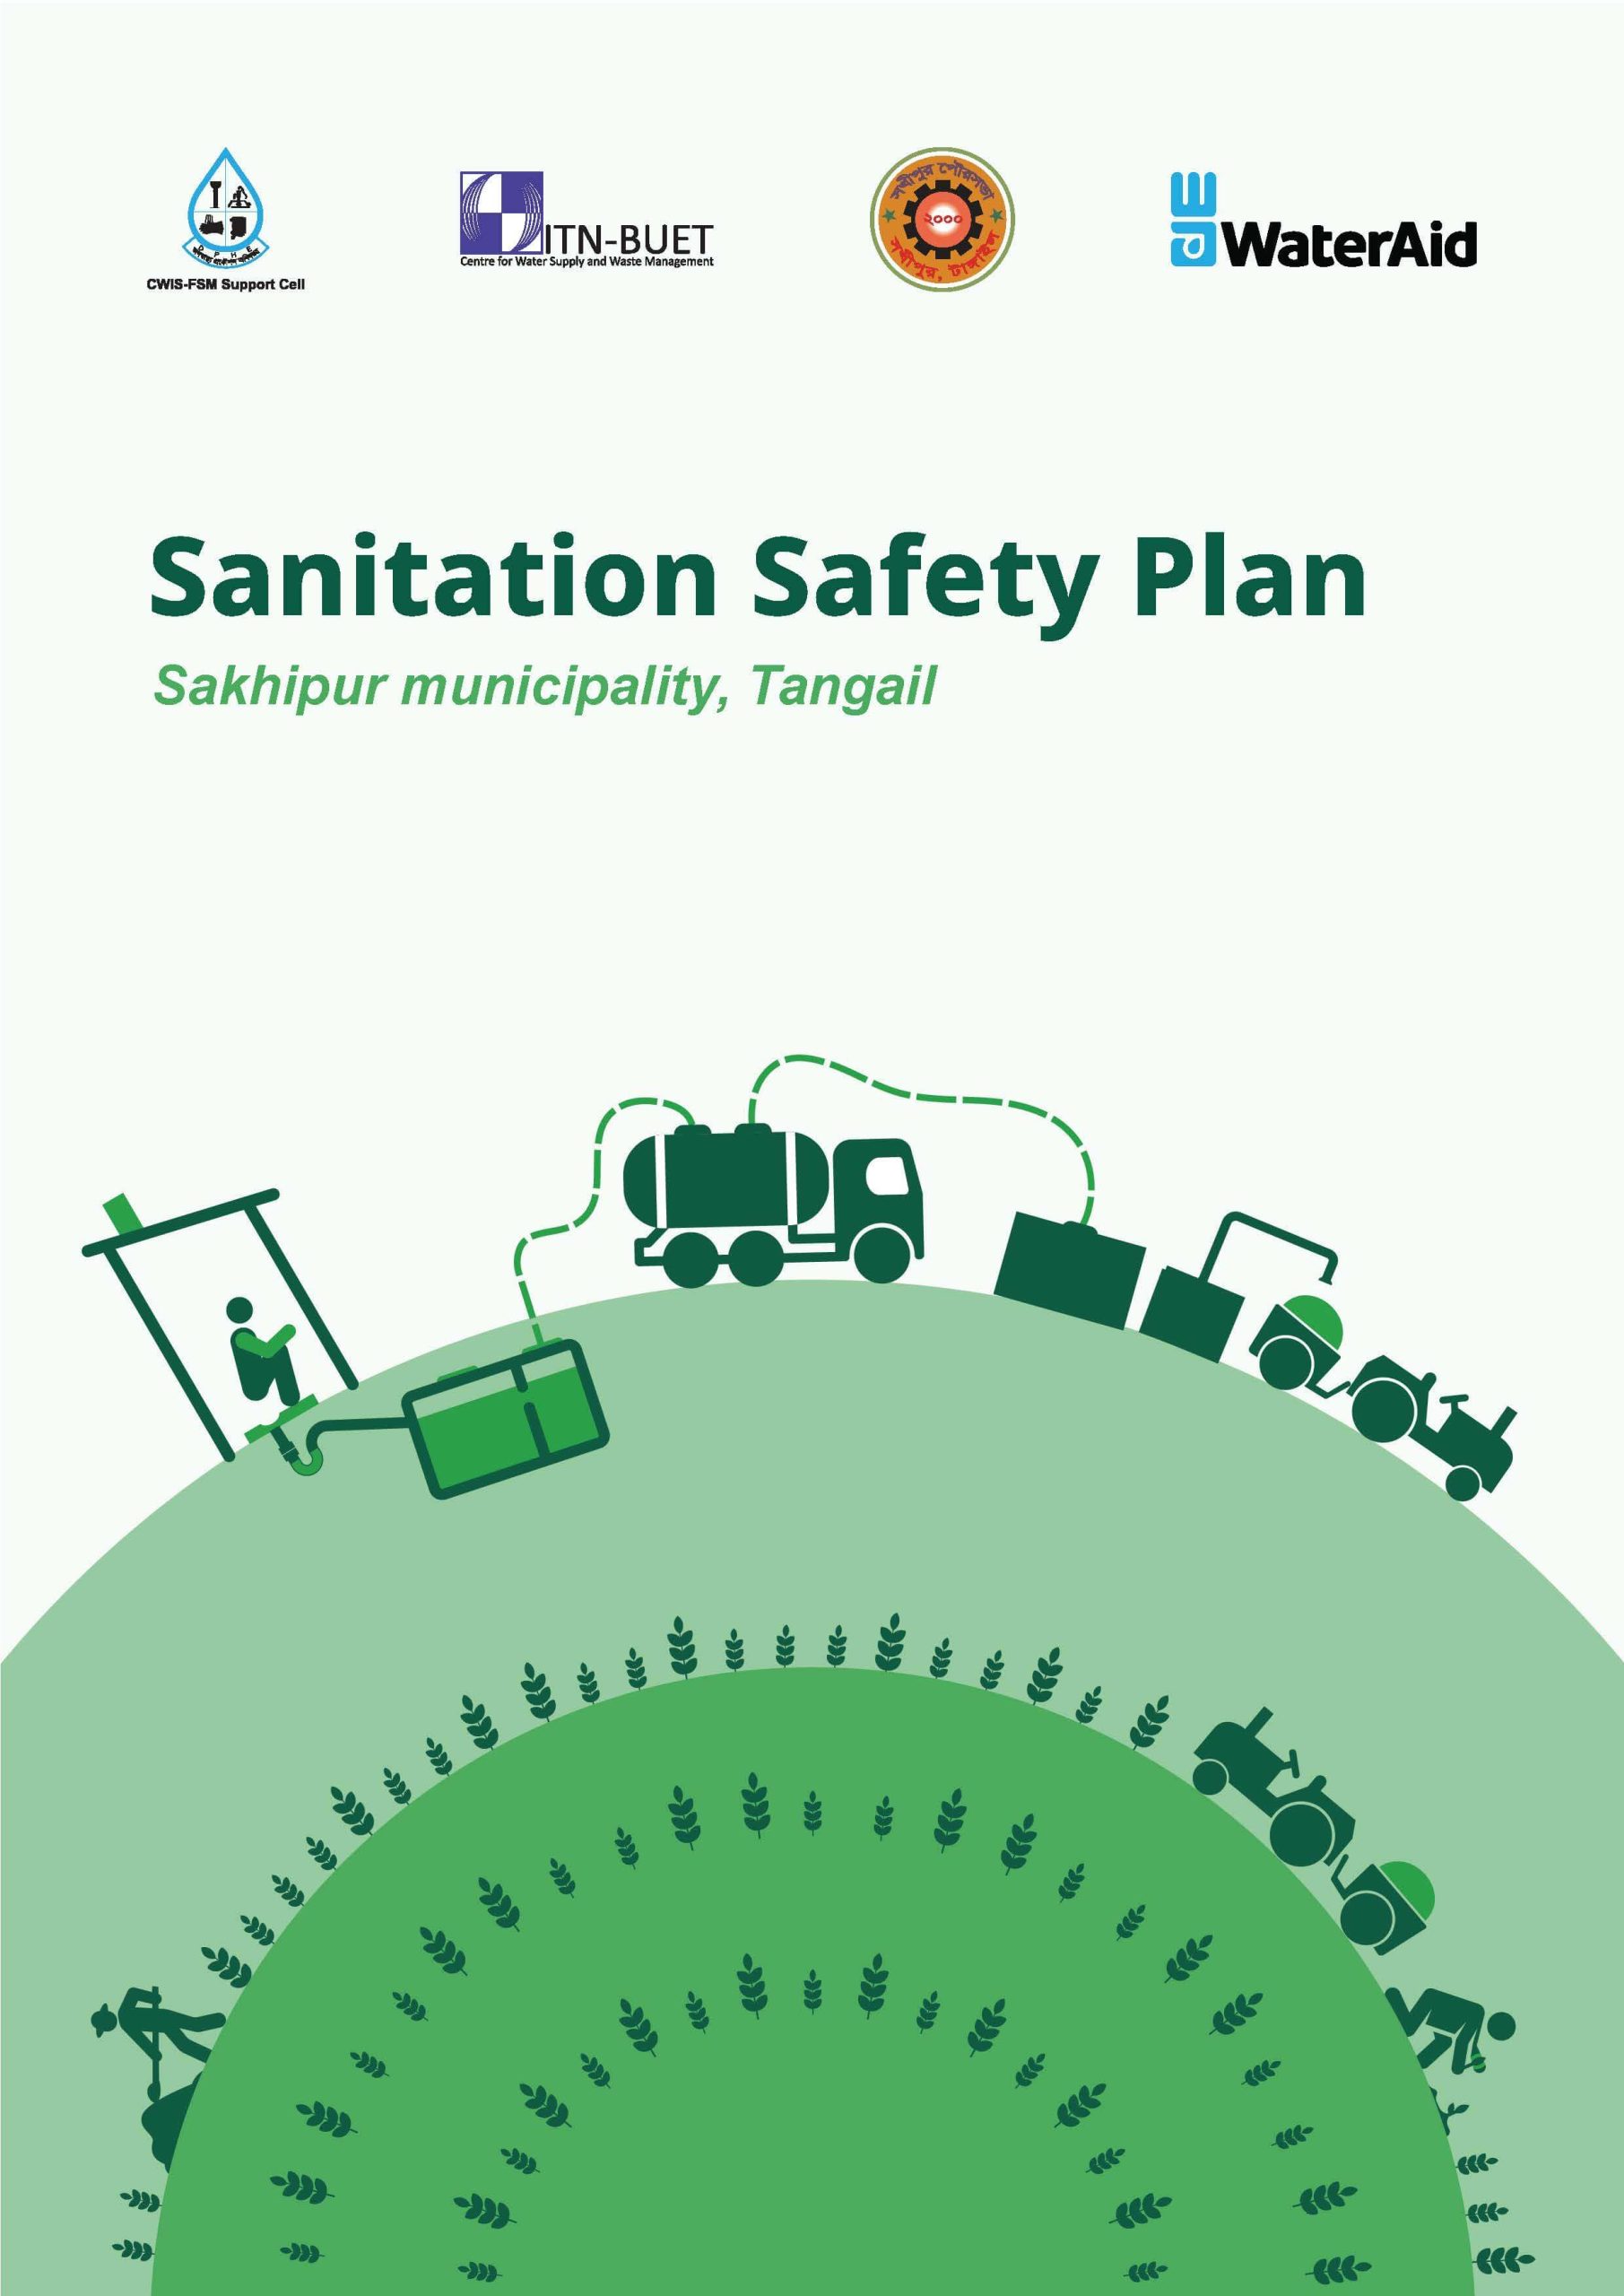 Sanitation Safety Plan for Sakhipur Municipality